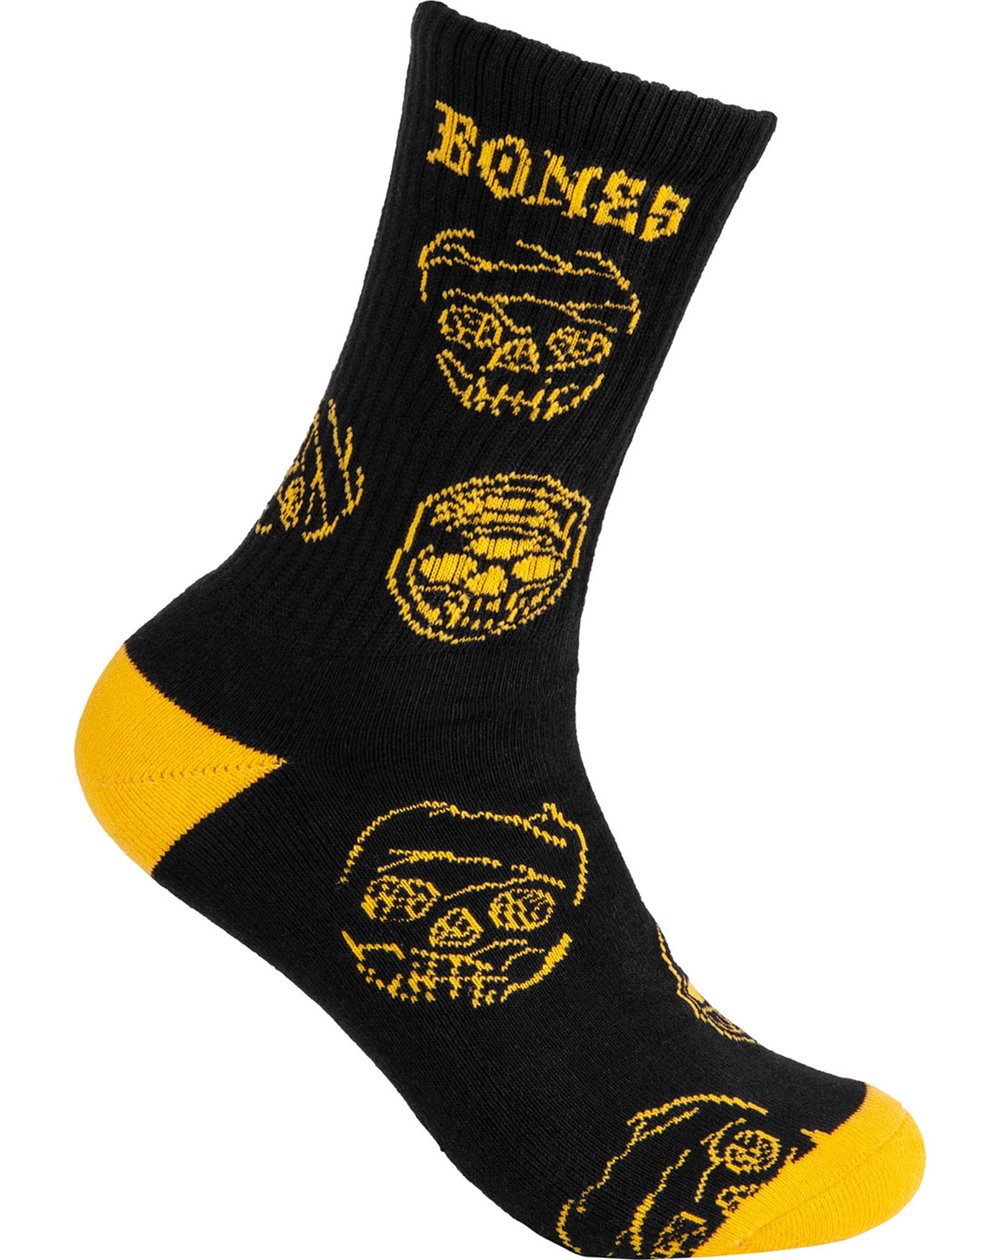 Bones Wheels Black & Gold Skate-Socken (Black)